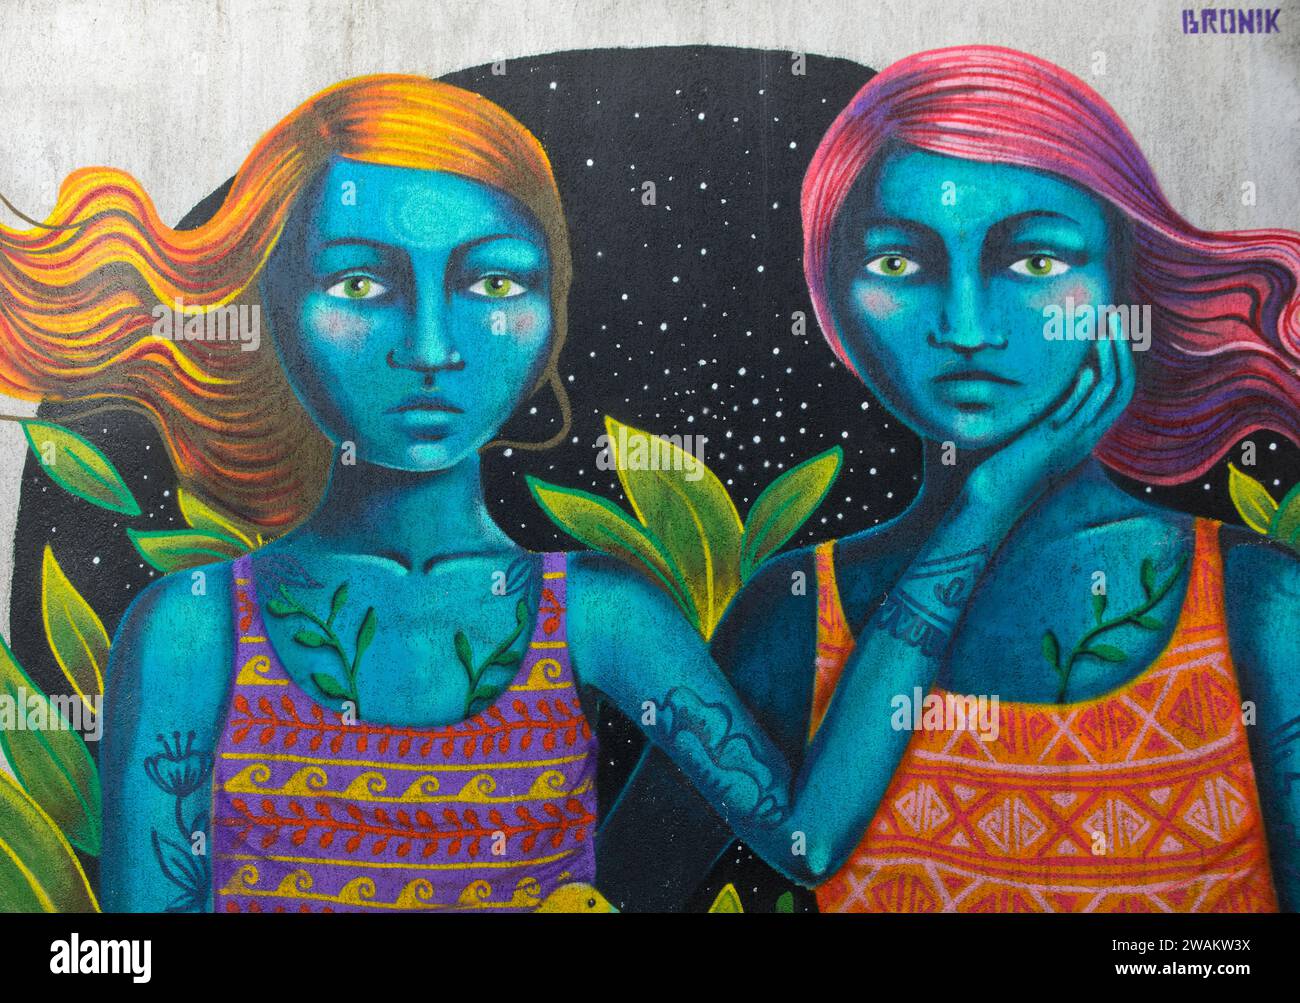 Blaue Frauen, Graffiti des peruanischen Straßenkünstlers Bronik, Straßenkunst in der Barataschwili-unterirdischen Passage, Tblisi, Georgien Stockfoto